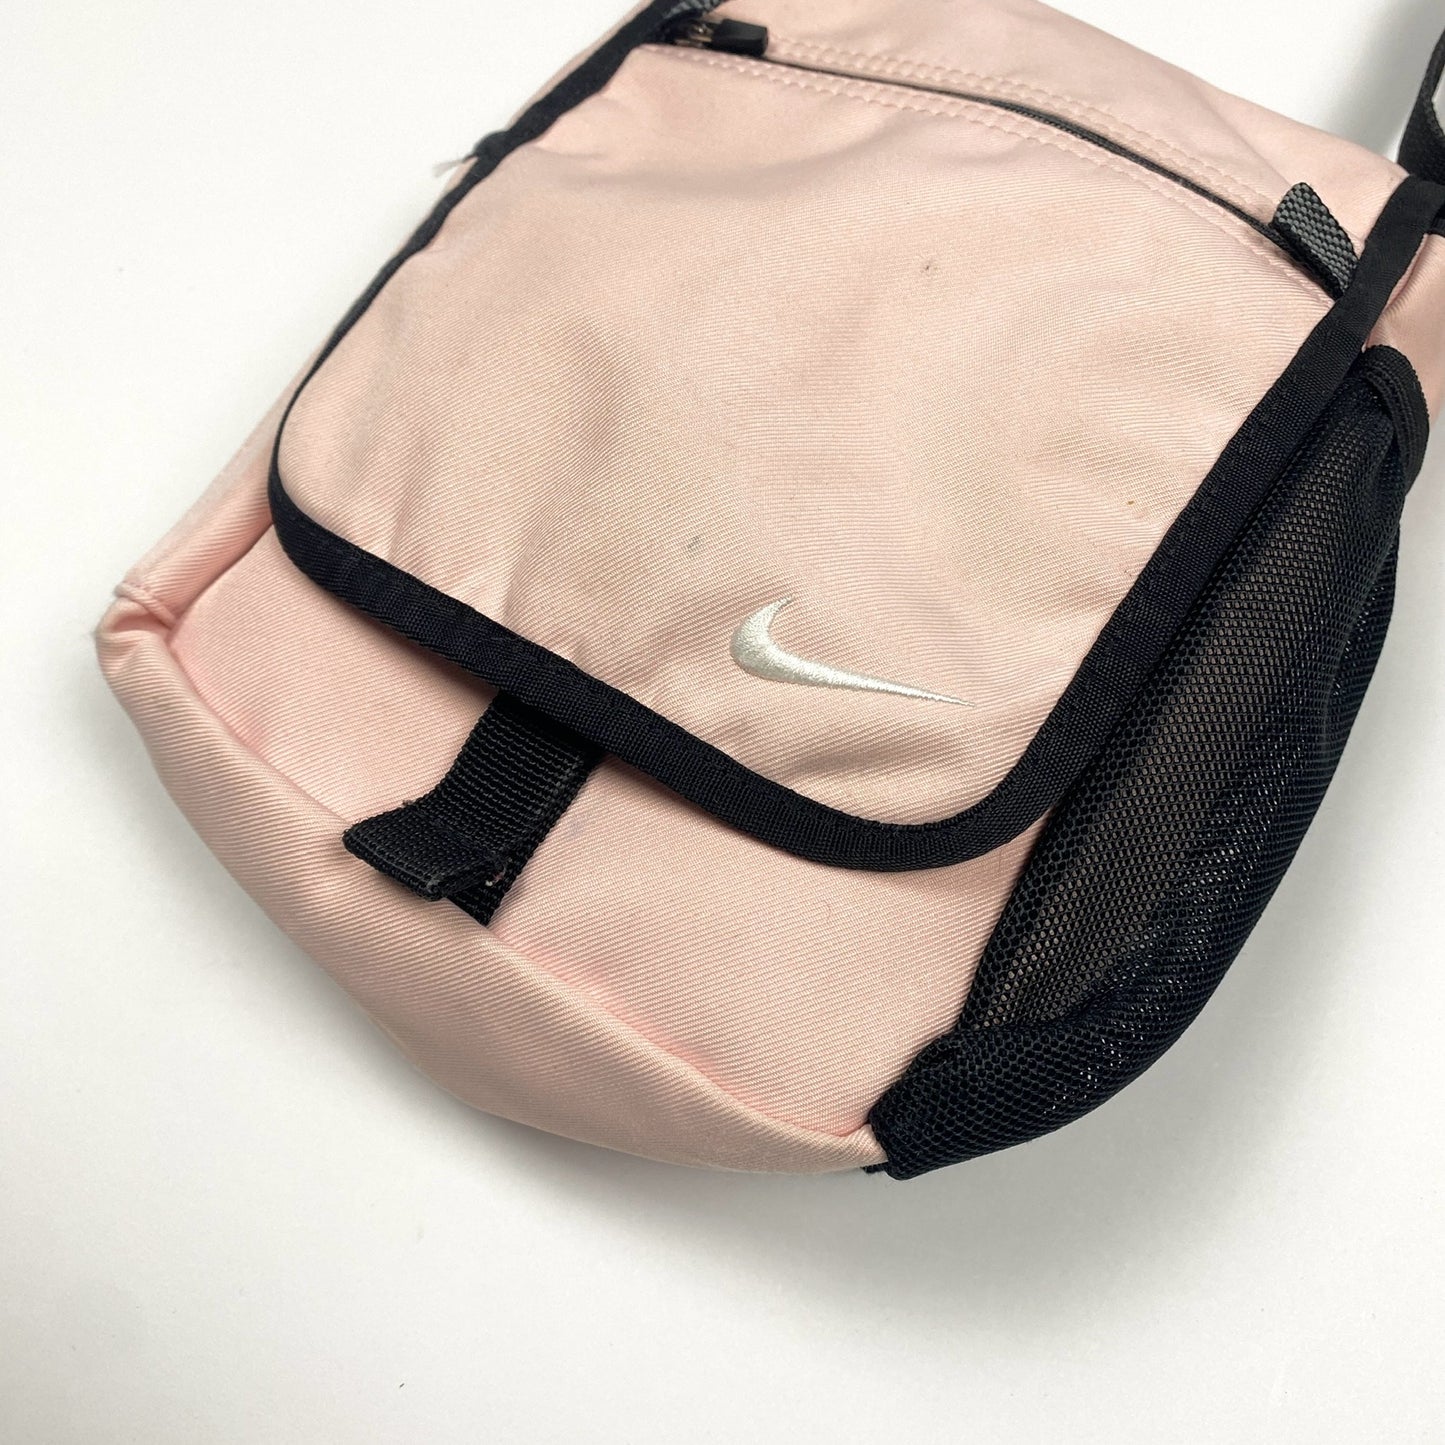 NIKE Vintage Shoulder Bag / Tasche